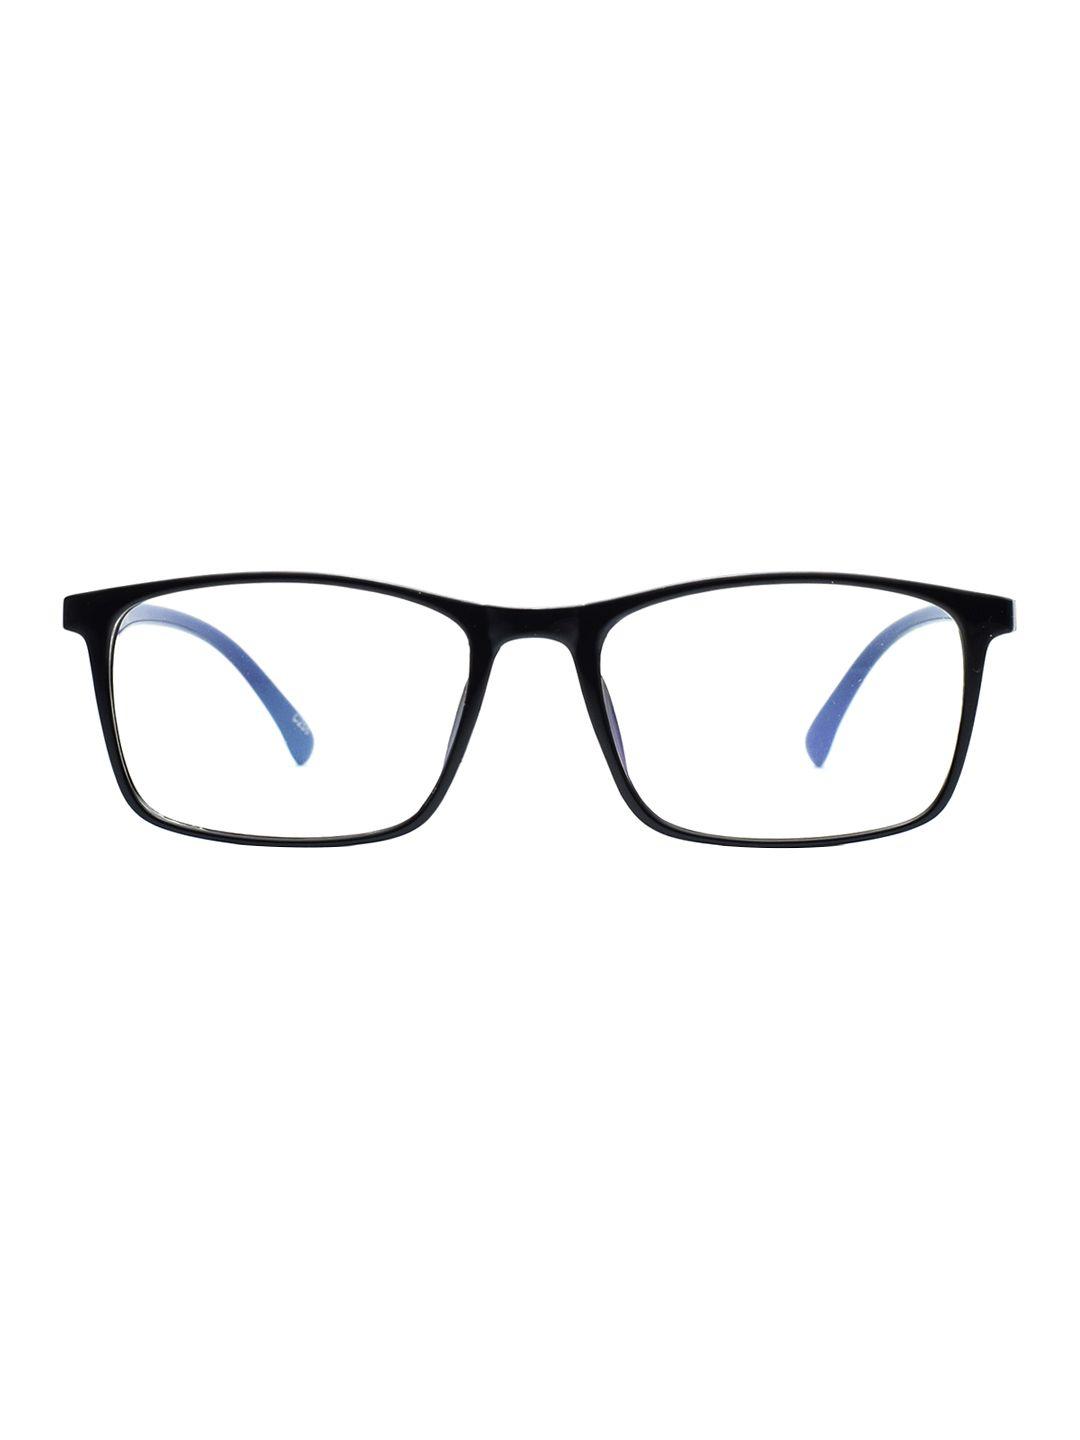 peter jones eyewear unisex black & blue full rim rectangle frames 1808rd